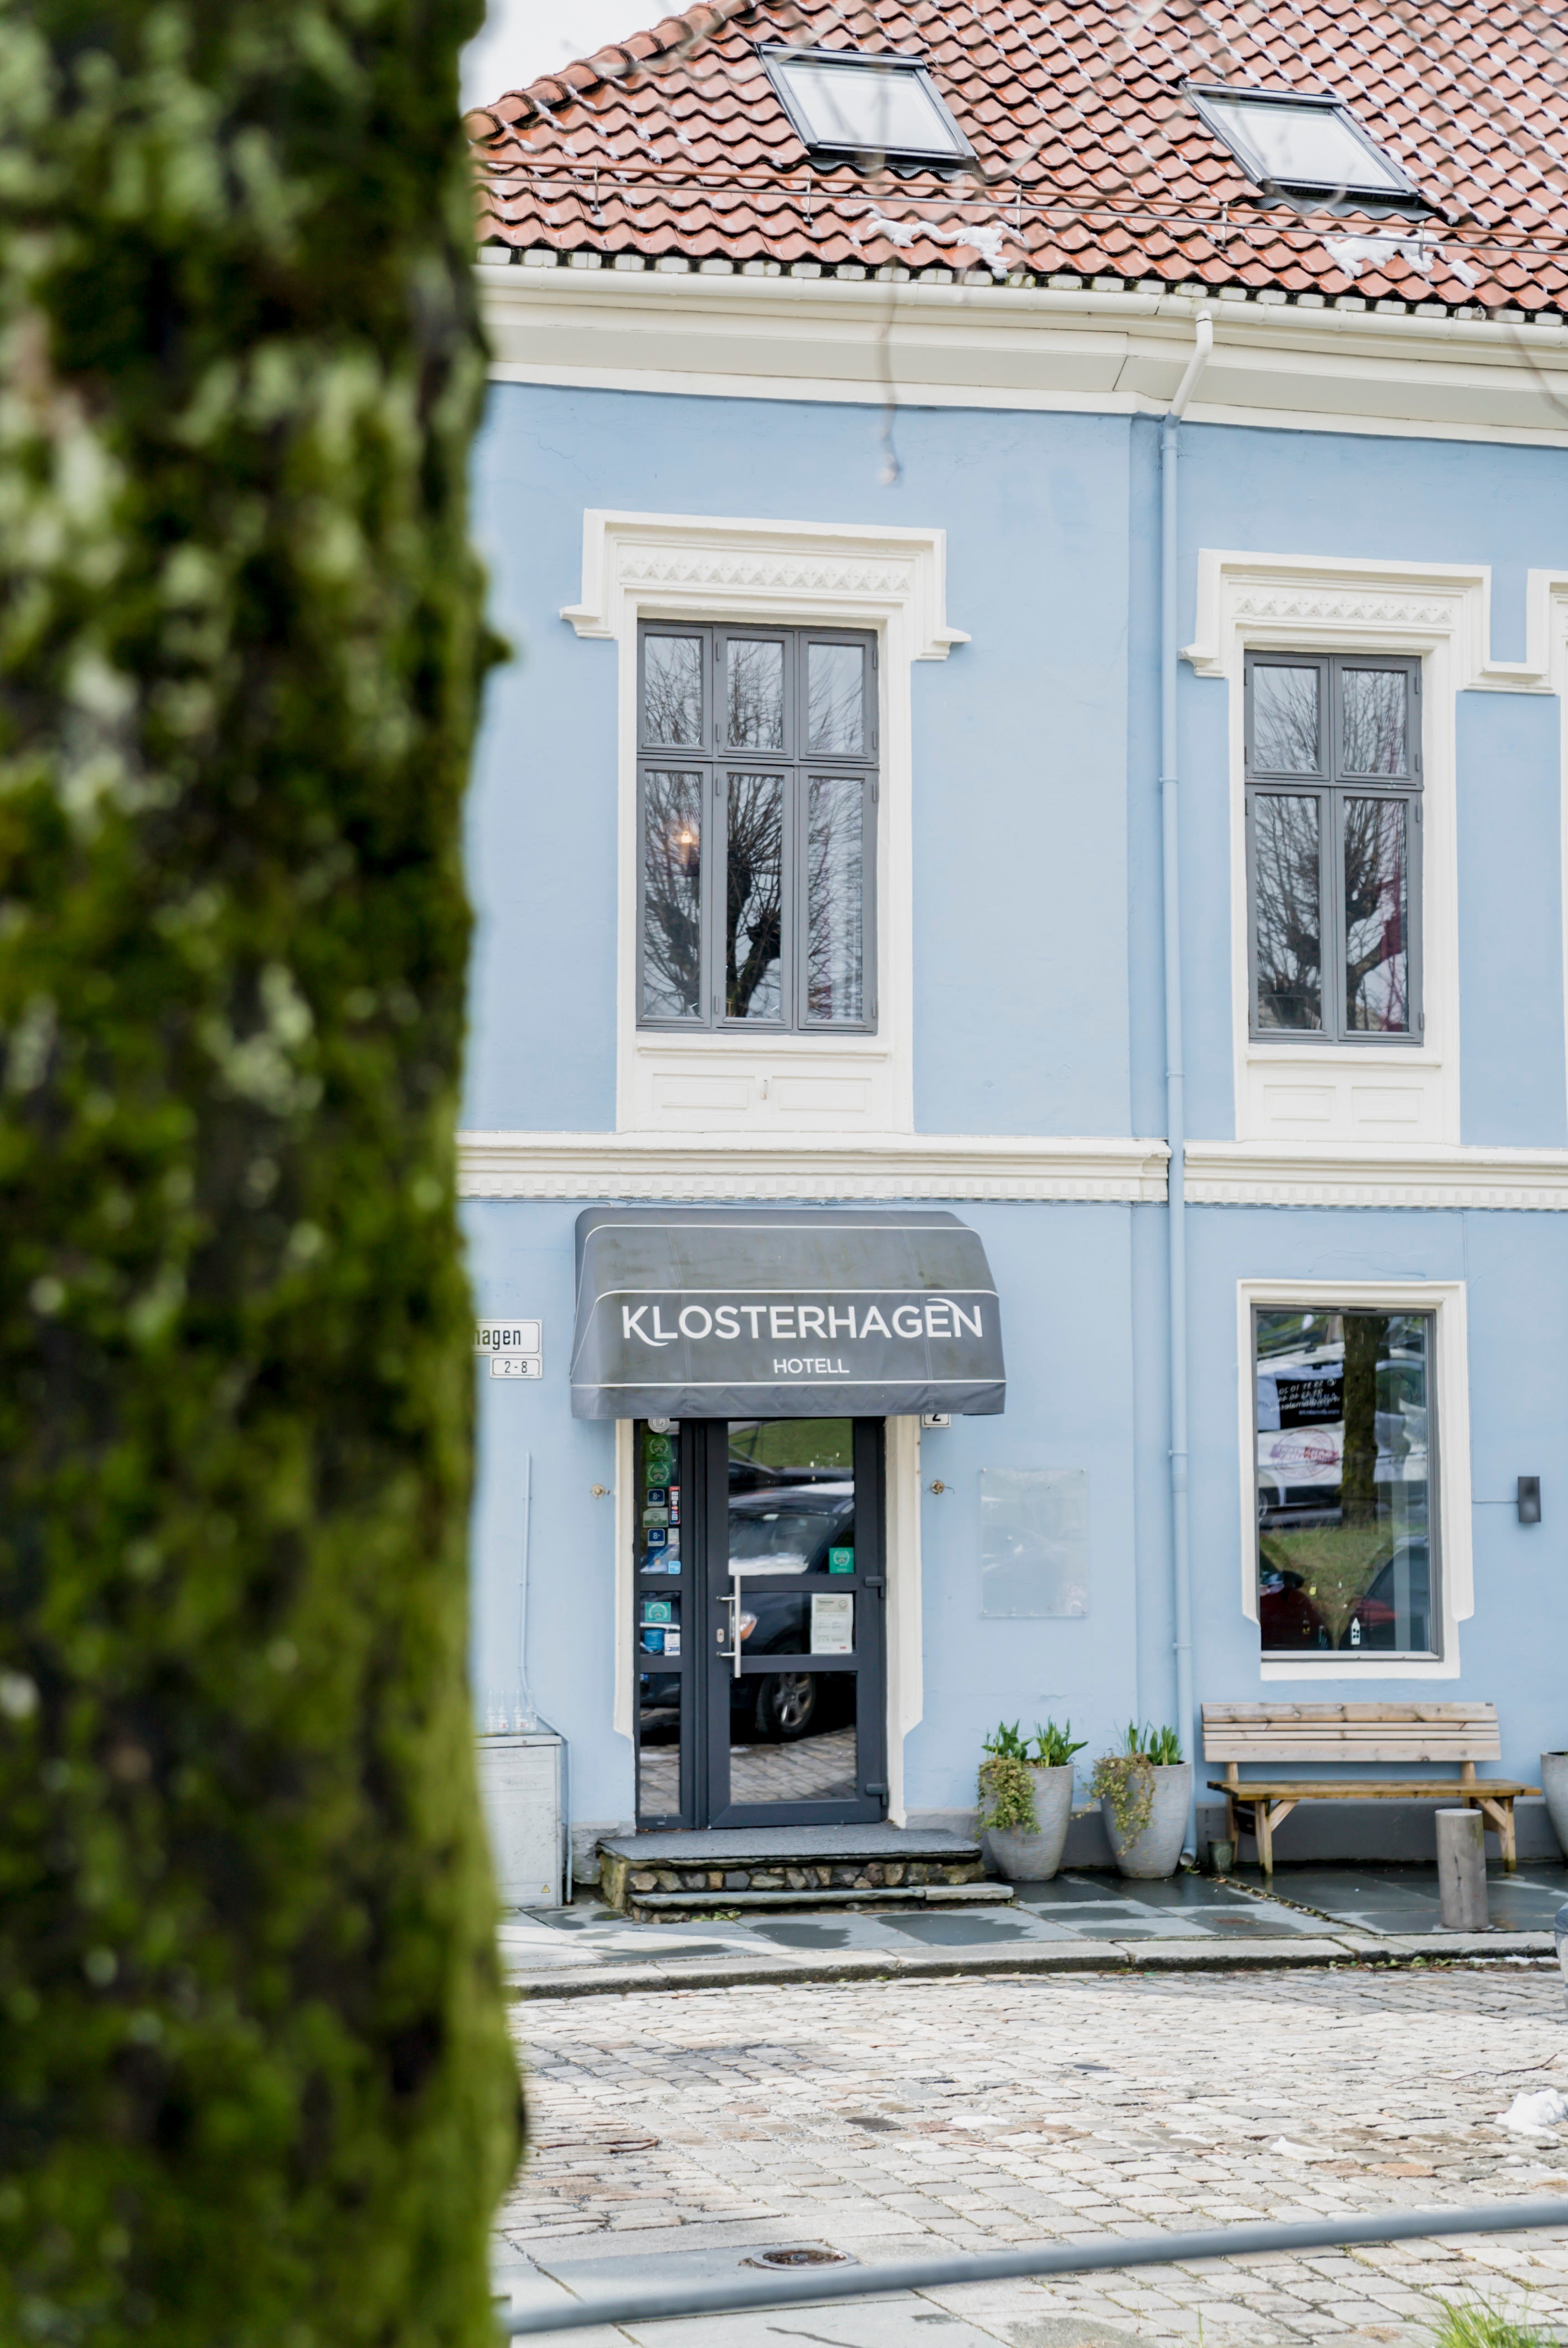 Blått bygg med inngang til Klosterhagen hotell